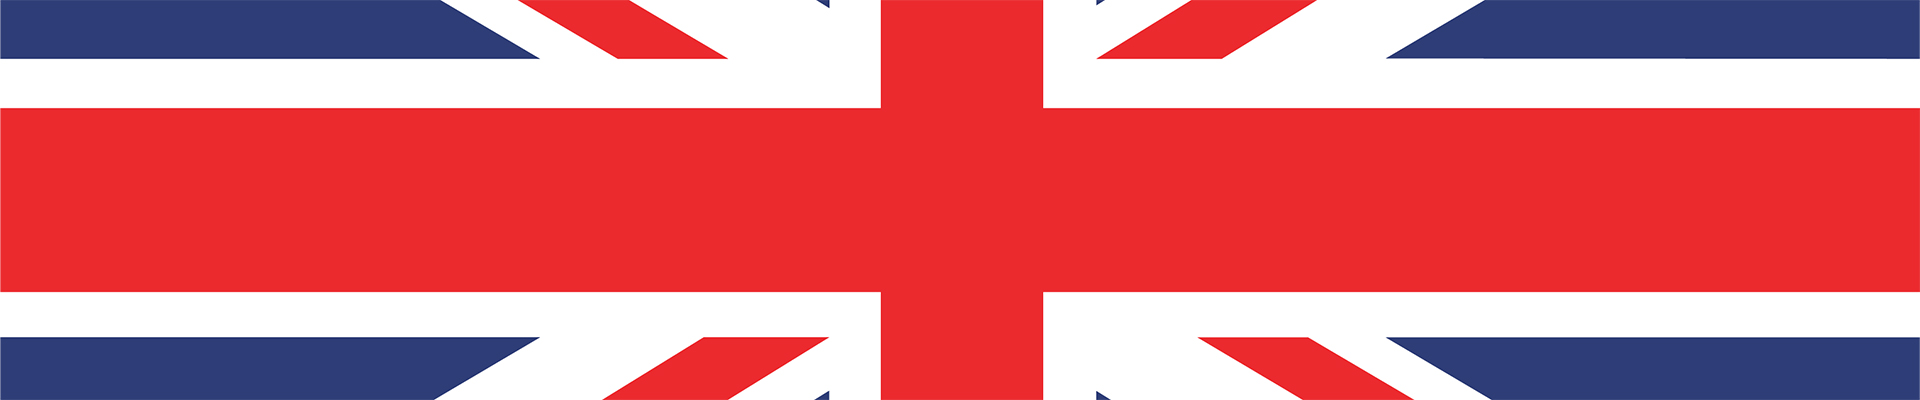 قطعة من علم المملكة المتحدة